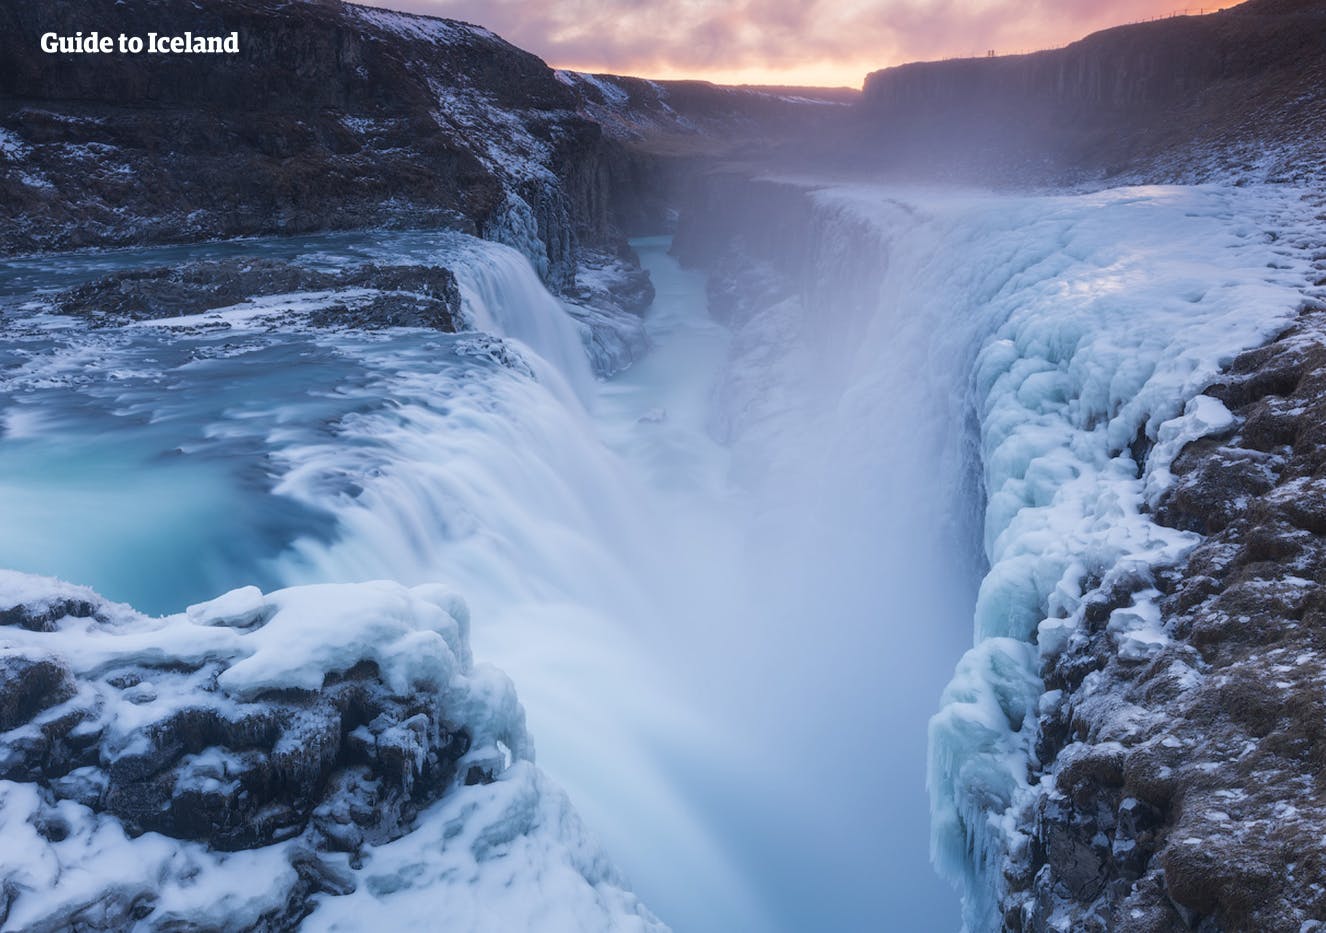 La cascata di Gullfoss in inverno è circondata da ghiaccio e neve, ma il fiume Hvíta continua a scorrere con forza.